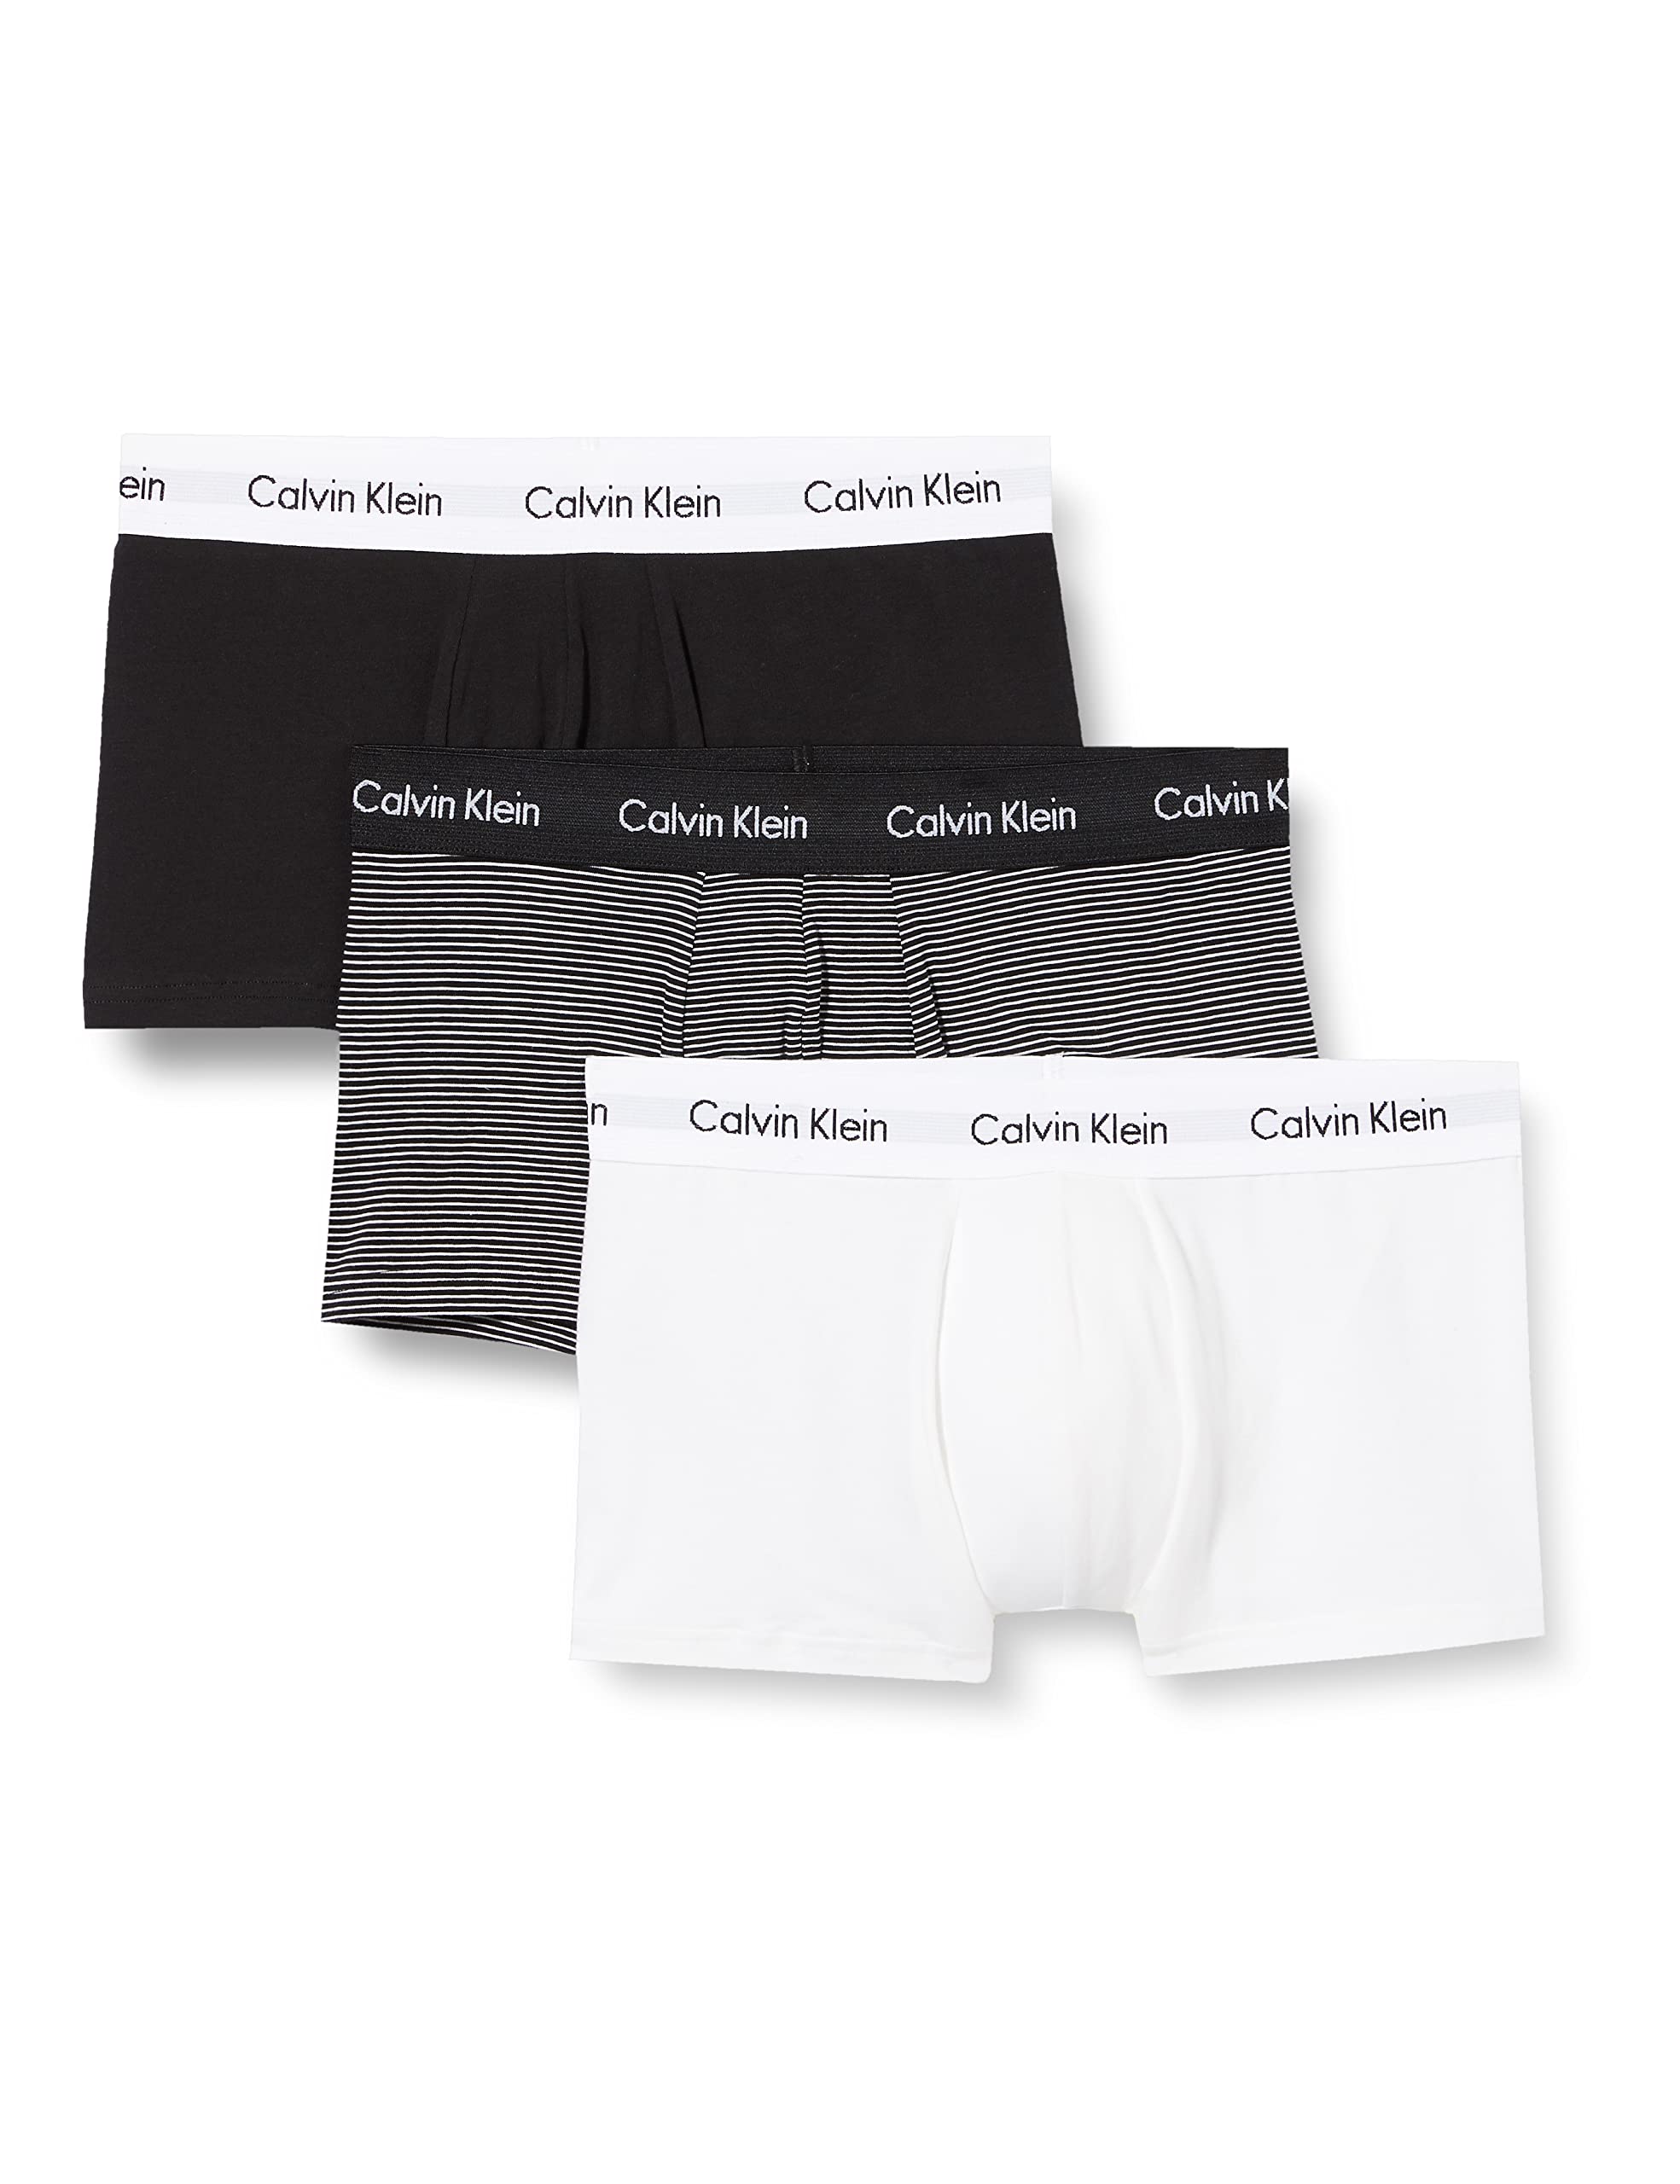 Calvin Klein Herren 3er Pack Boxershorts Low Rise Trunks Baumwolle mit Stretch, Mehrfarbig (White/B&W Stripe/Black), M